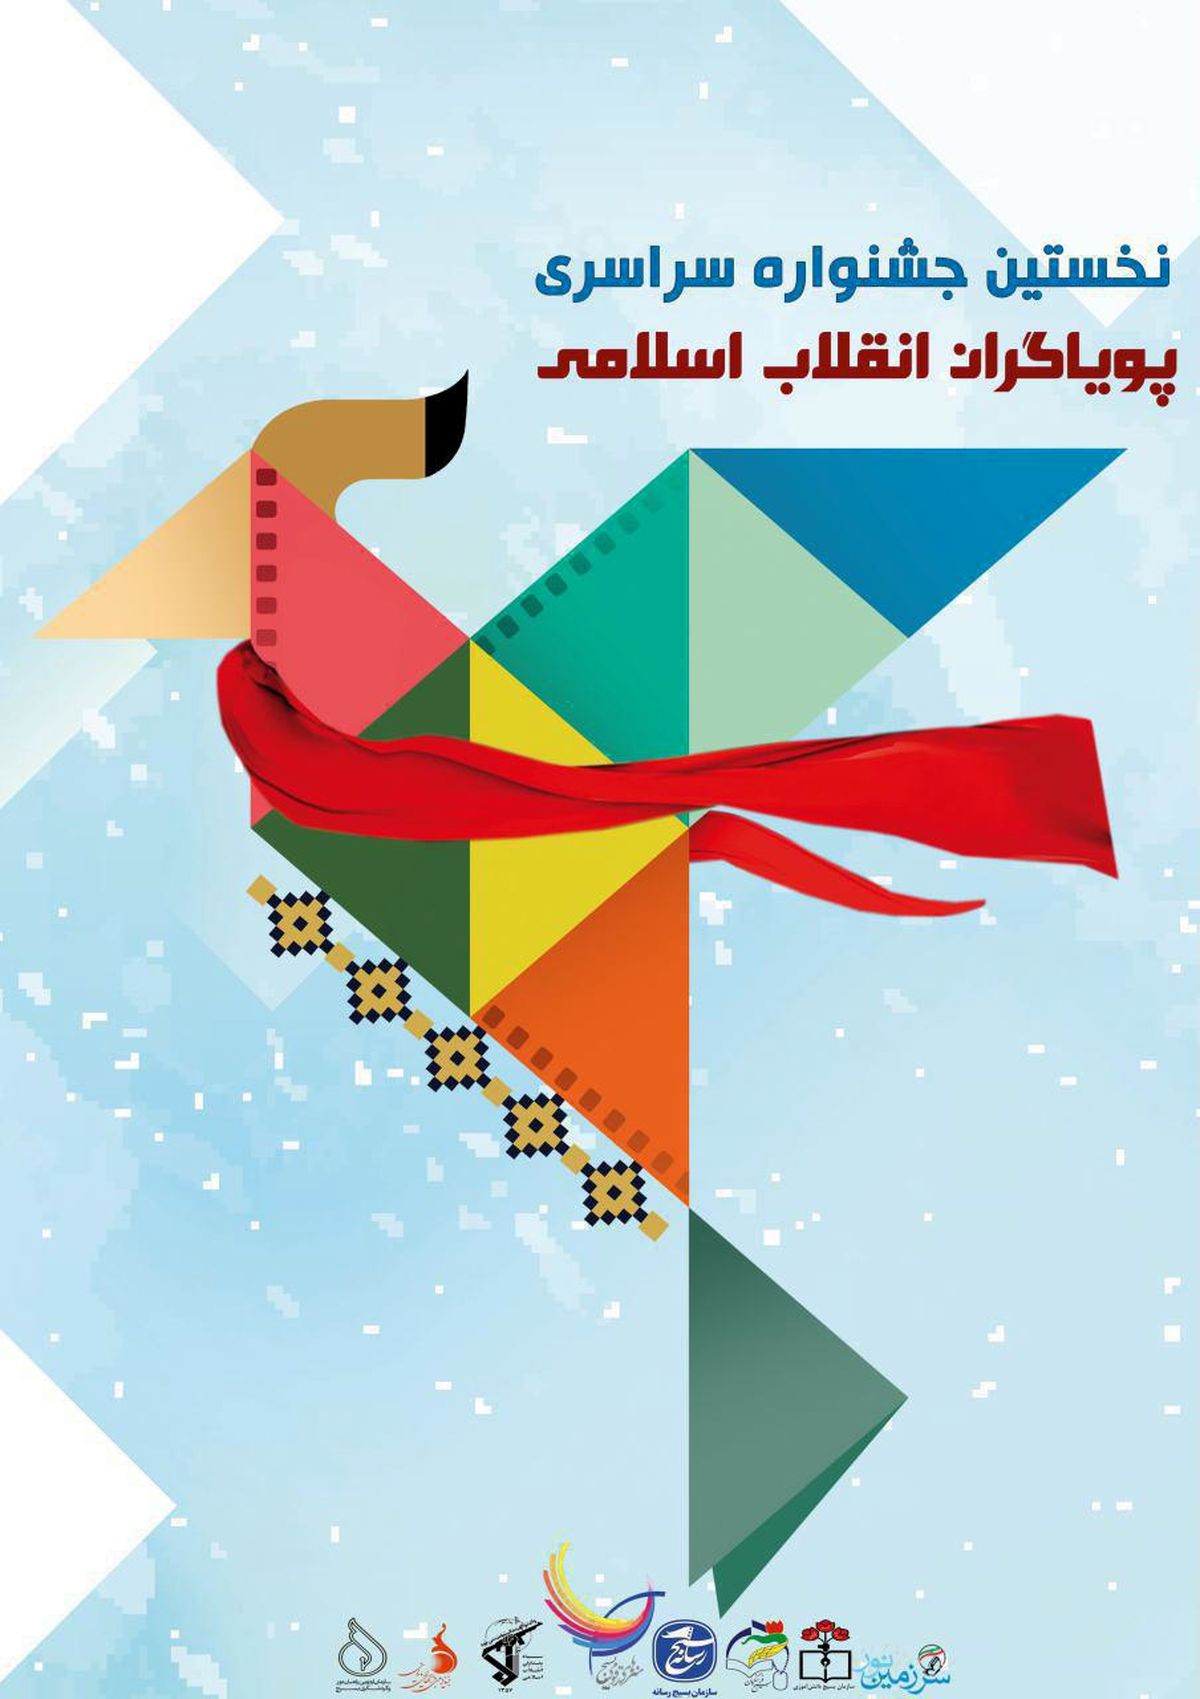 اختتامیه جشنواره پویاگران، هفته اول اردیبهشت ماه در تهران برگزار میشود